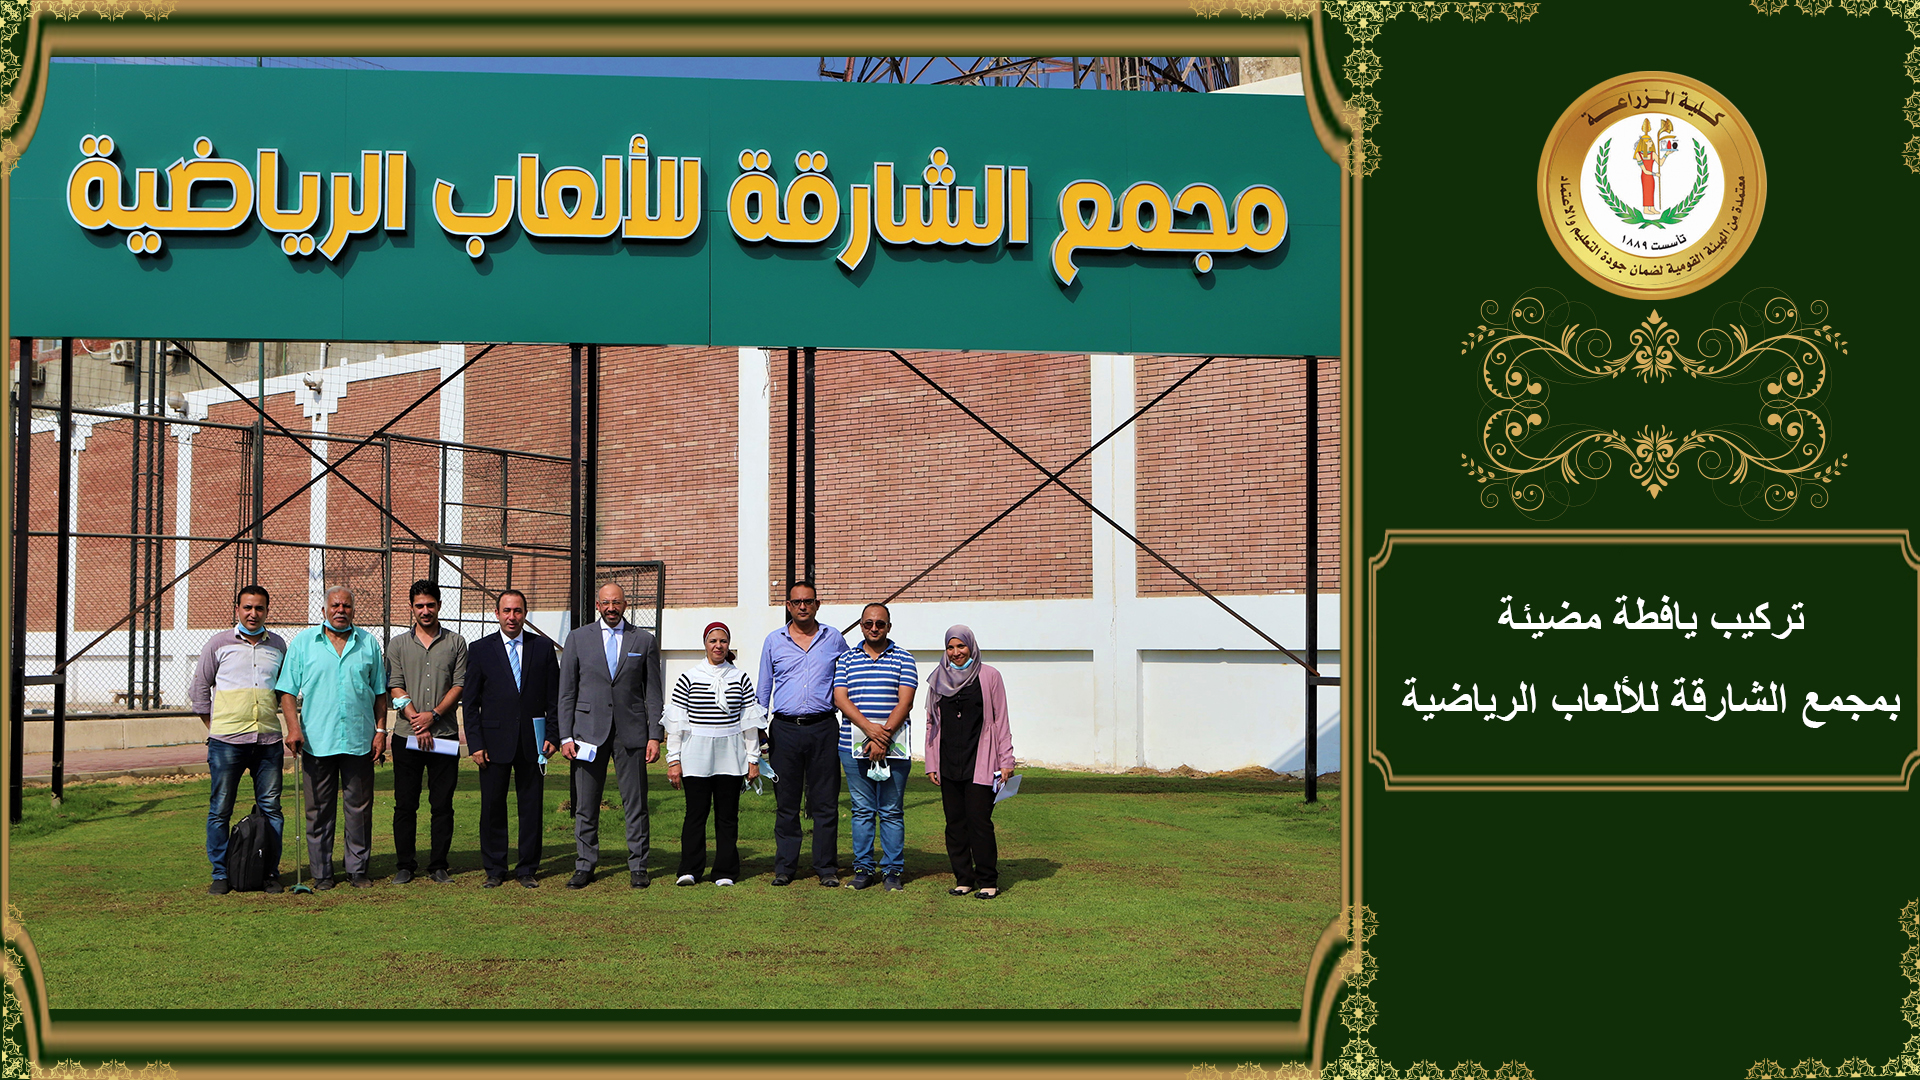 أنجازات السيد الاستاذ الدكتور عمرو مصطفى عميد كلية زراعة جامعة القاهرة خلال 